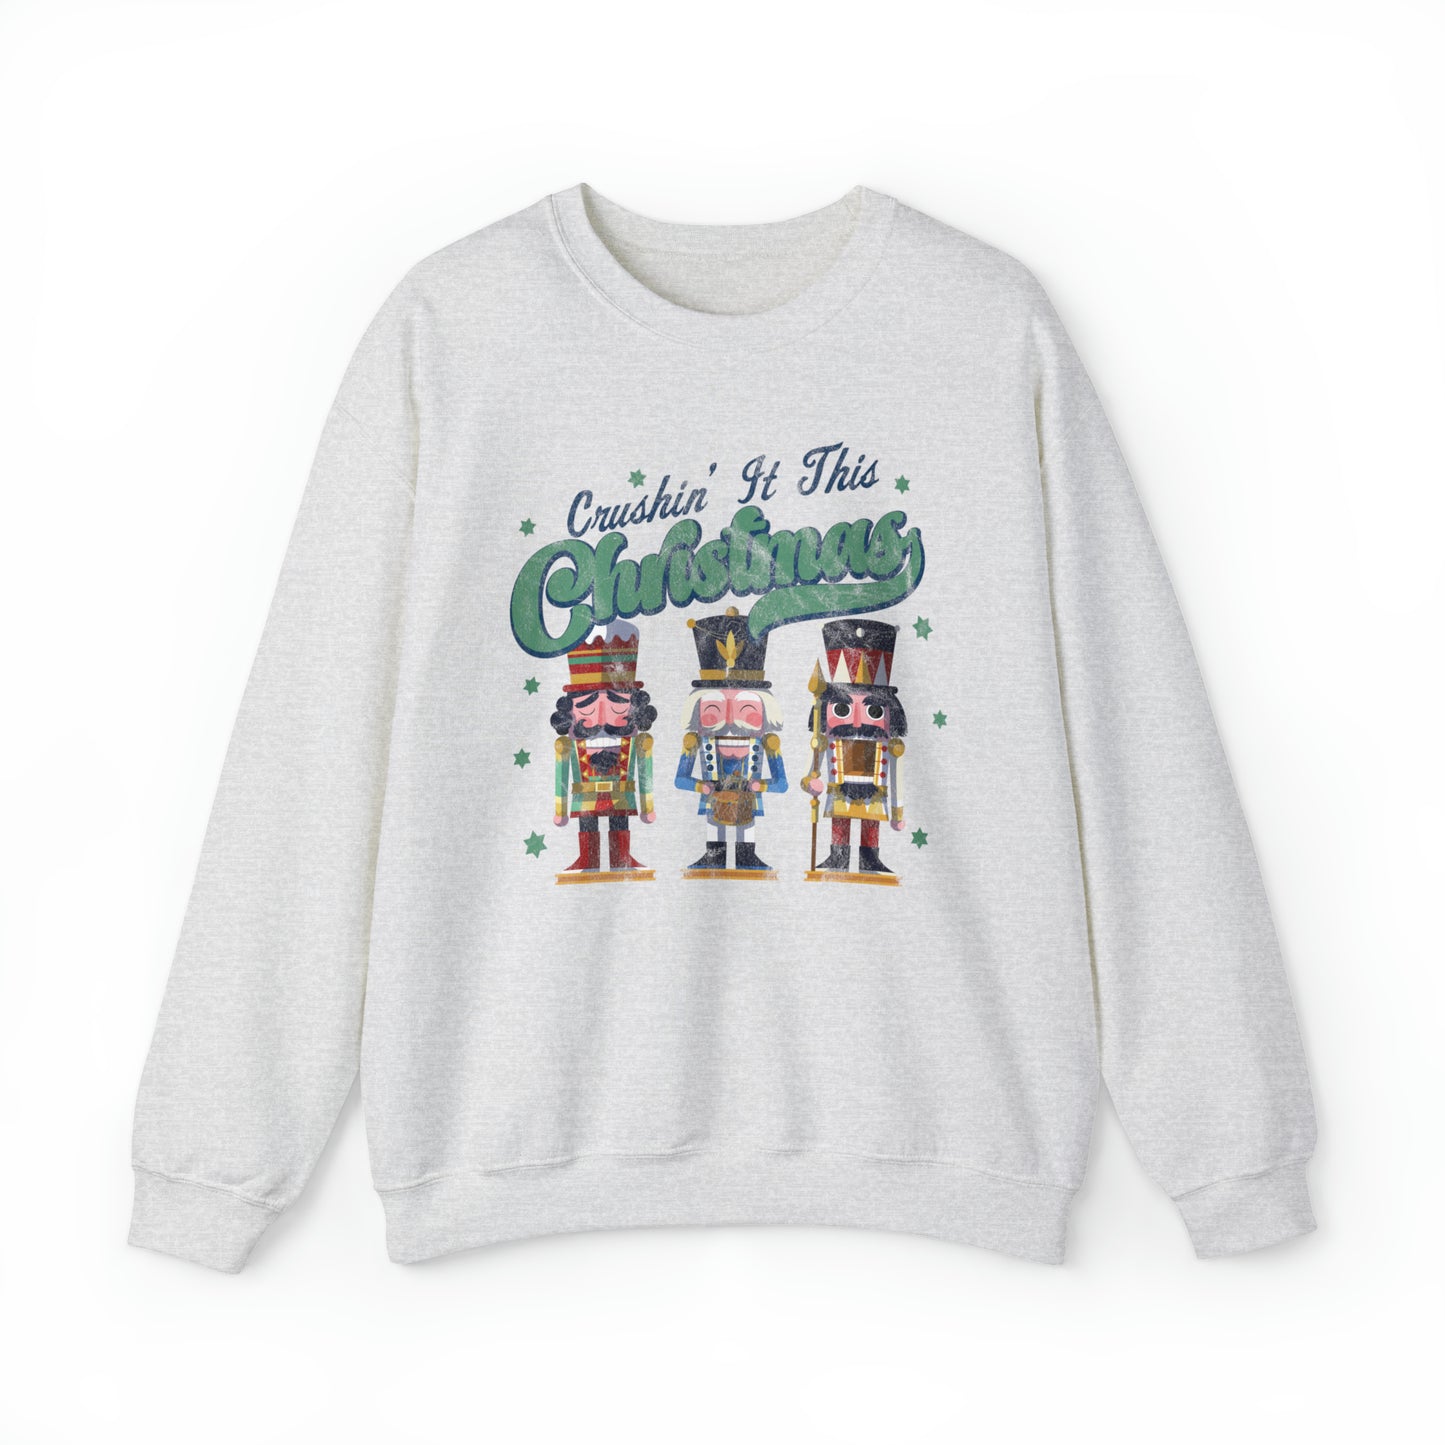 Crushin It this Christmas Sweatshirt